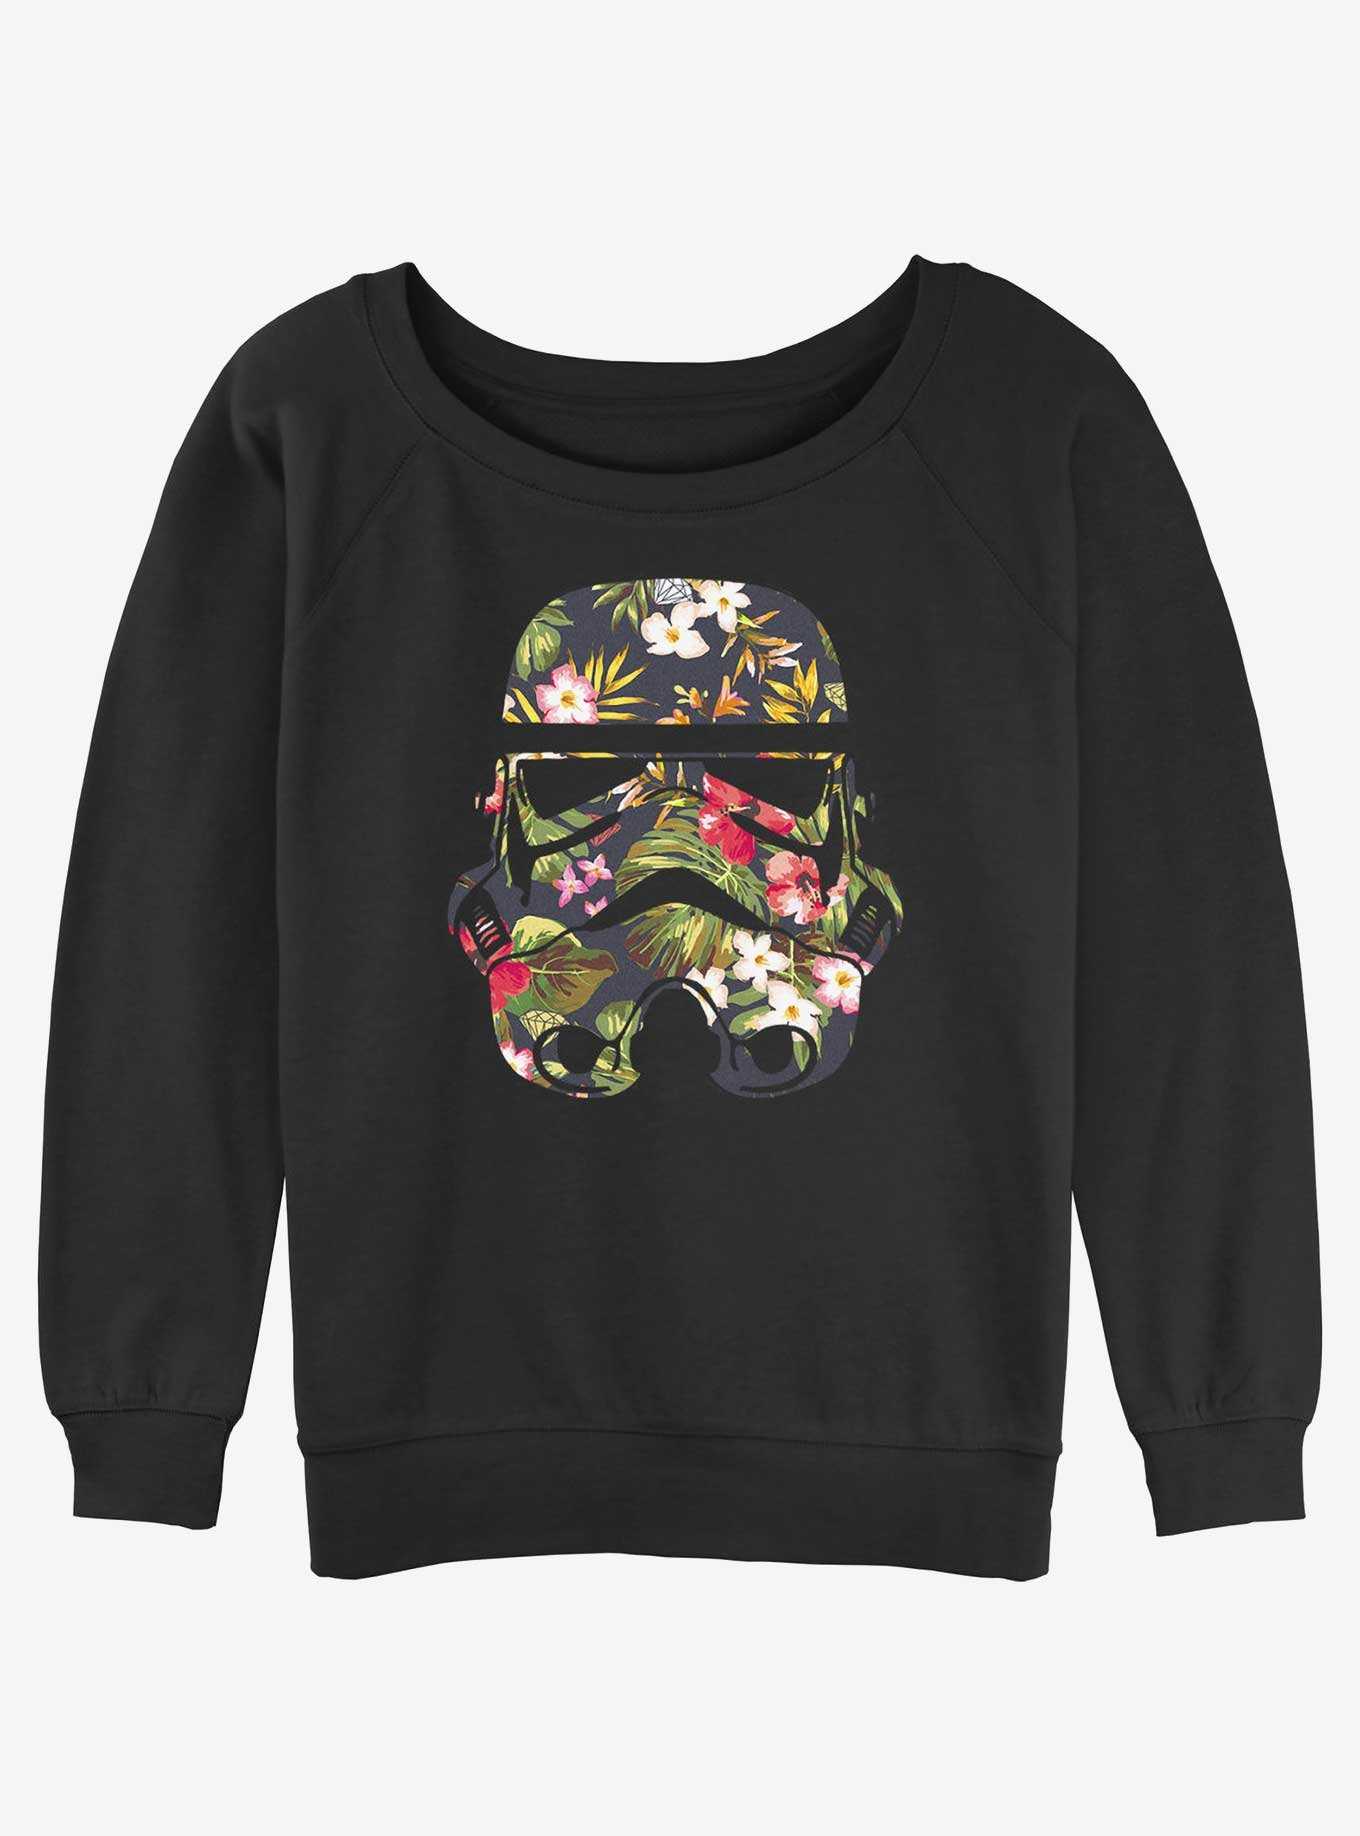 Star Wars Storm Trooper Floral Girls Slouchy Sweatshirt, , hi-res